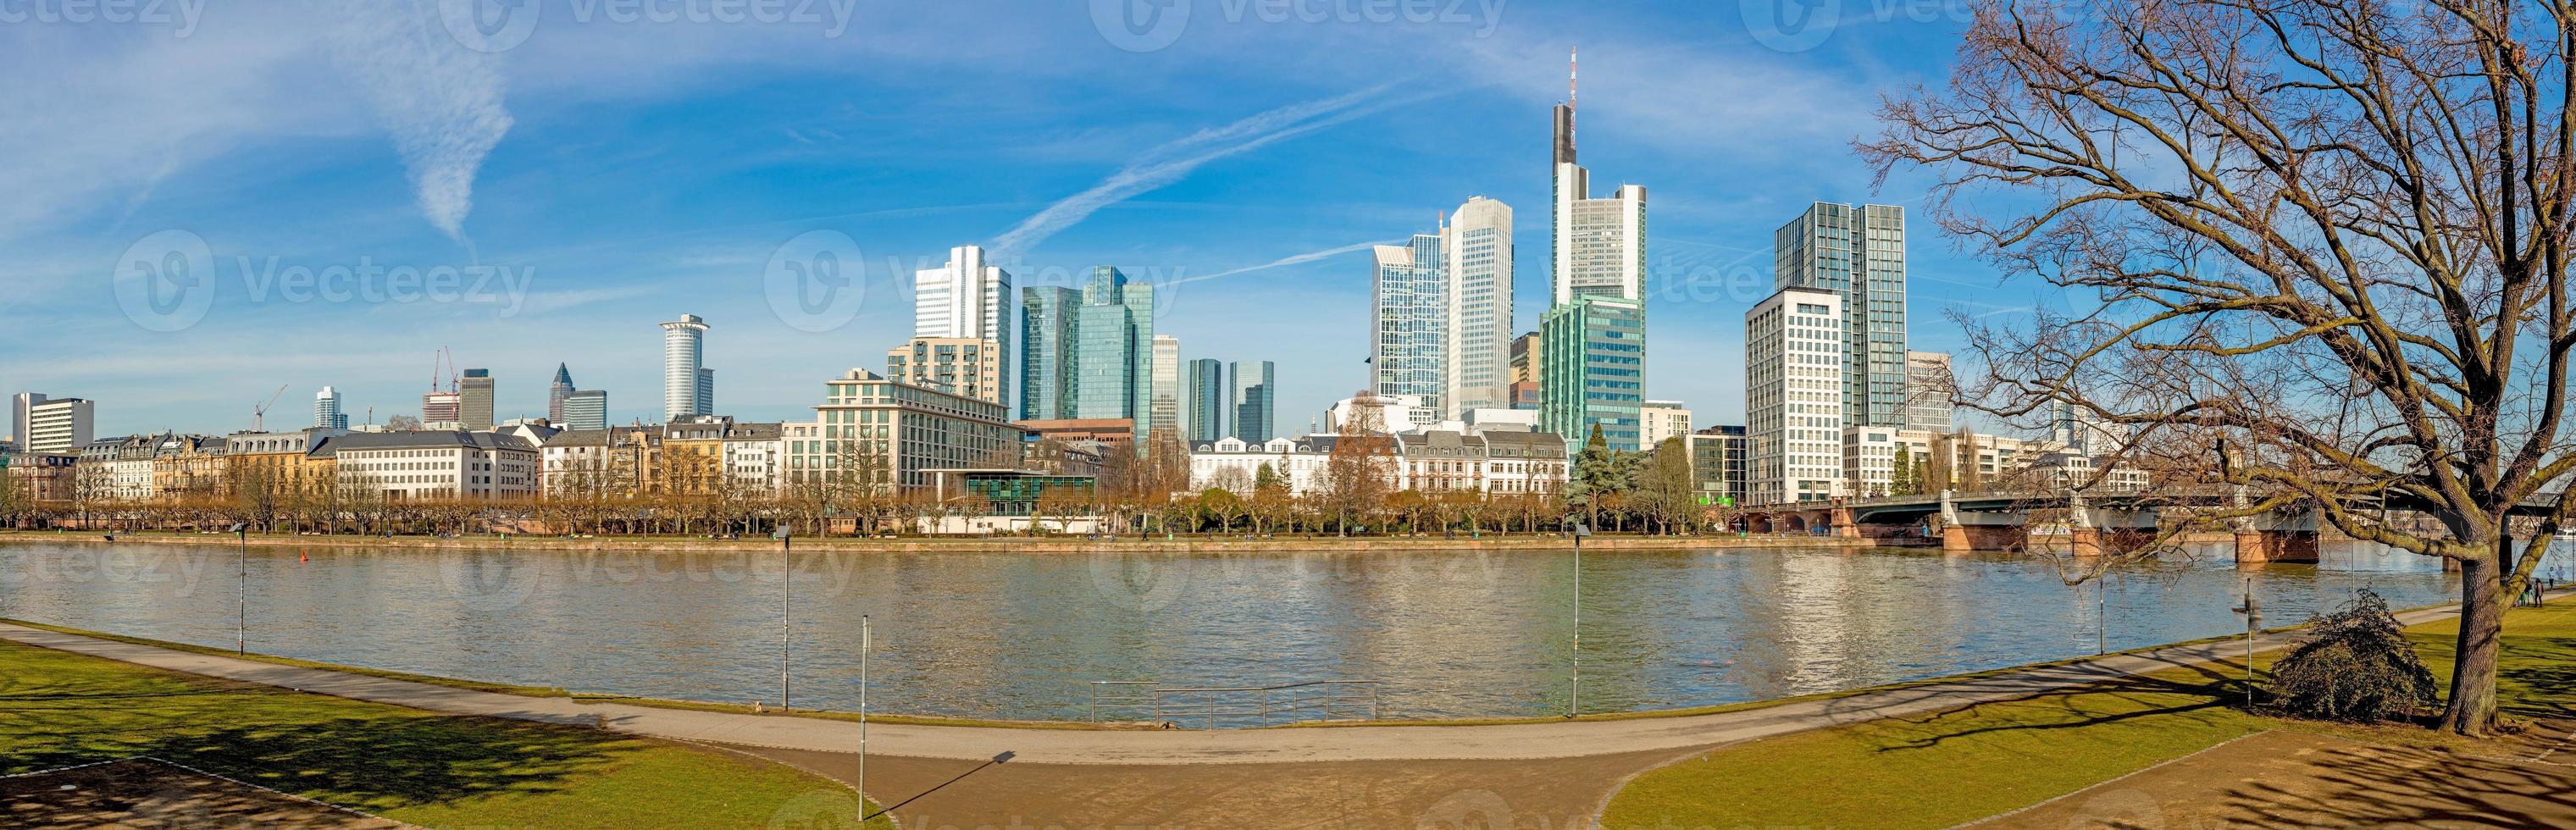 panorama- bild från huvud flod Bank över frankfurt horisont med blå himmel och solsken foto